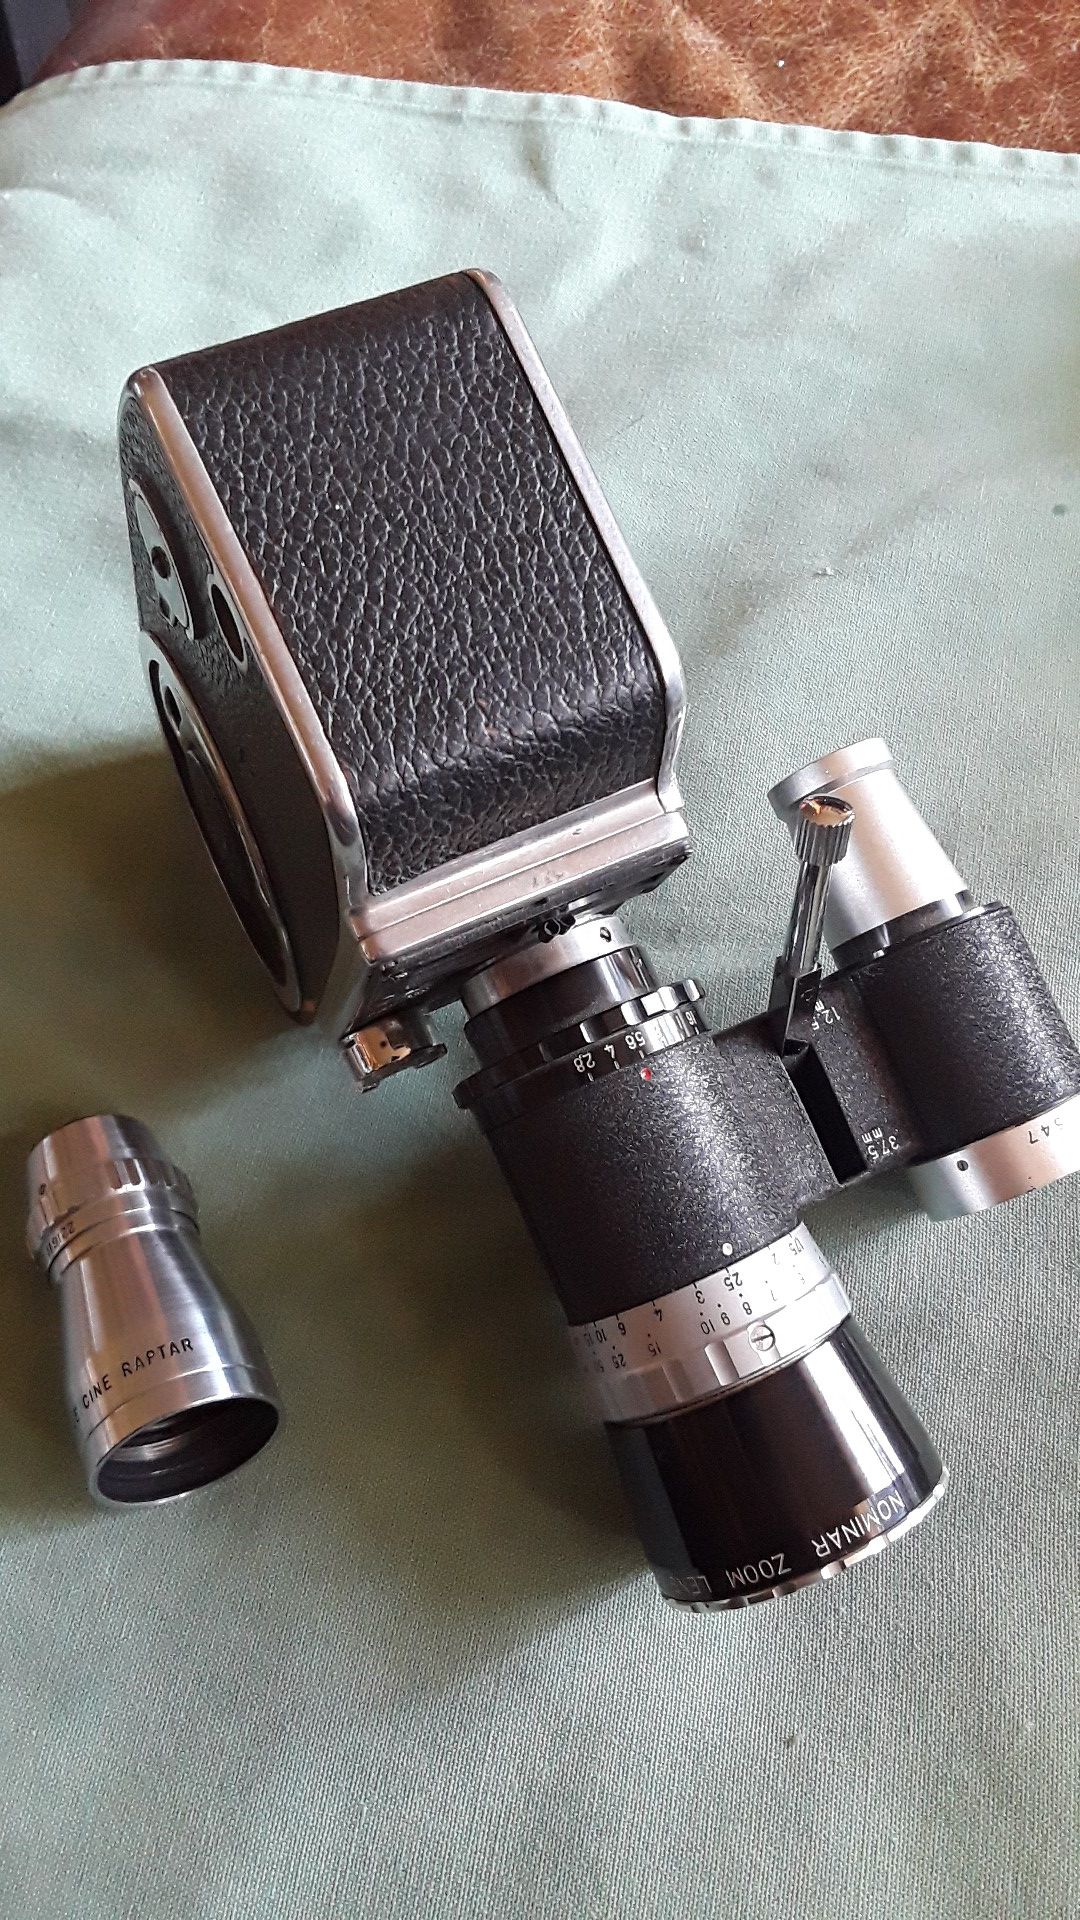 Bolex 8mm movie camera w rare zoom lens + lens